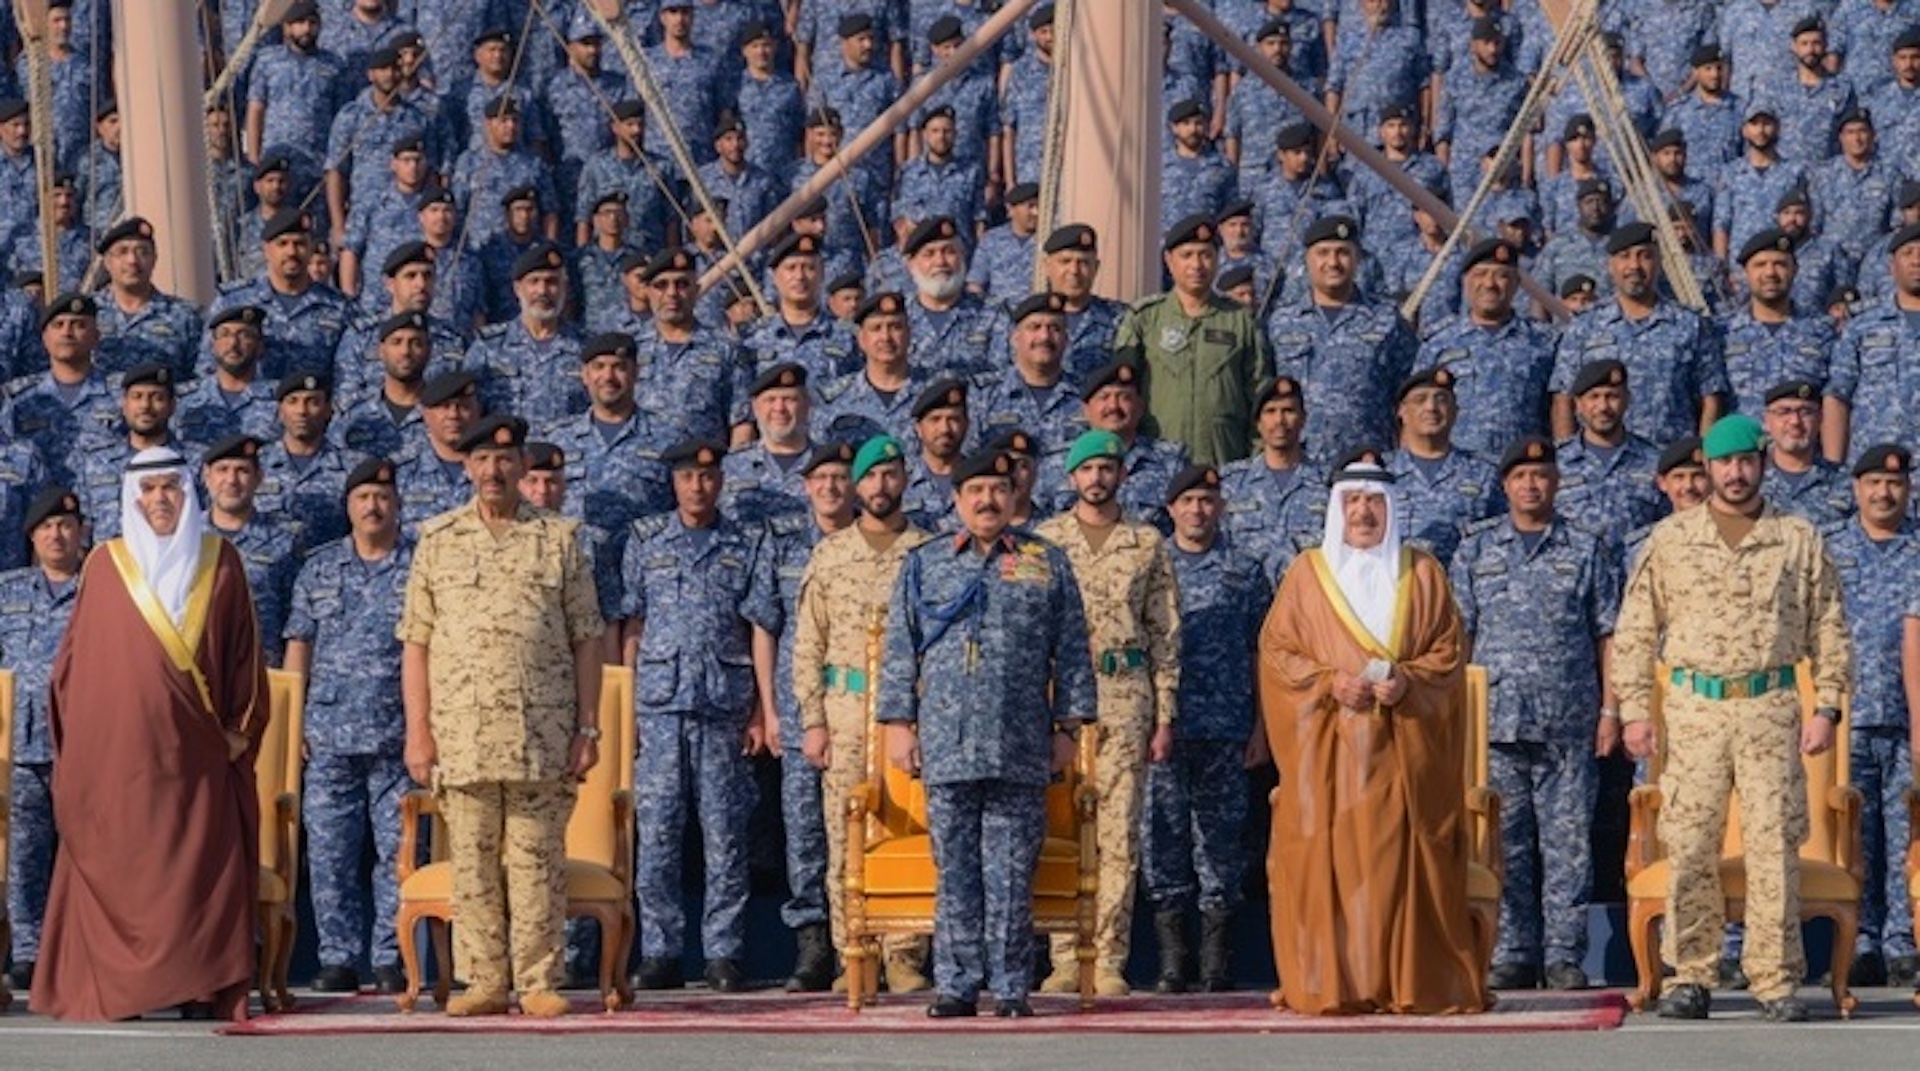 HM King visits Royal Bahrain Navy Force, praises US, UK partnerships